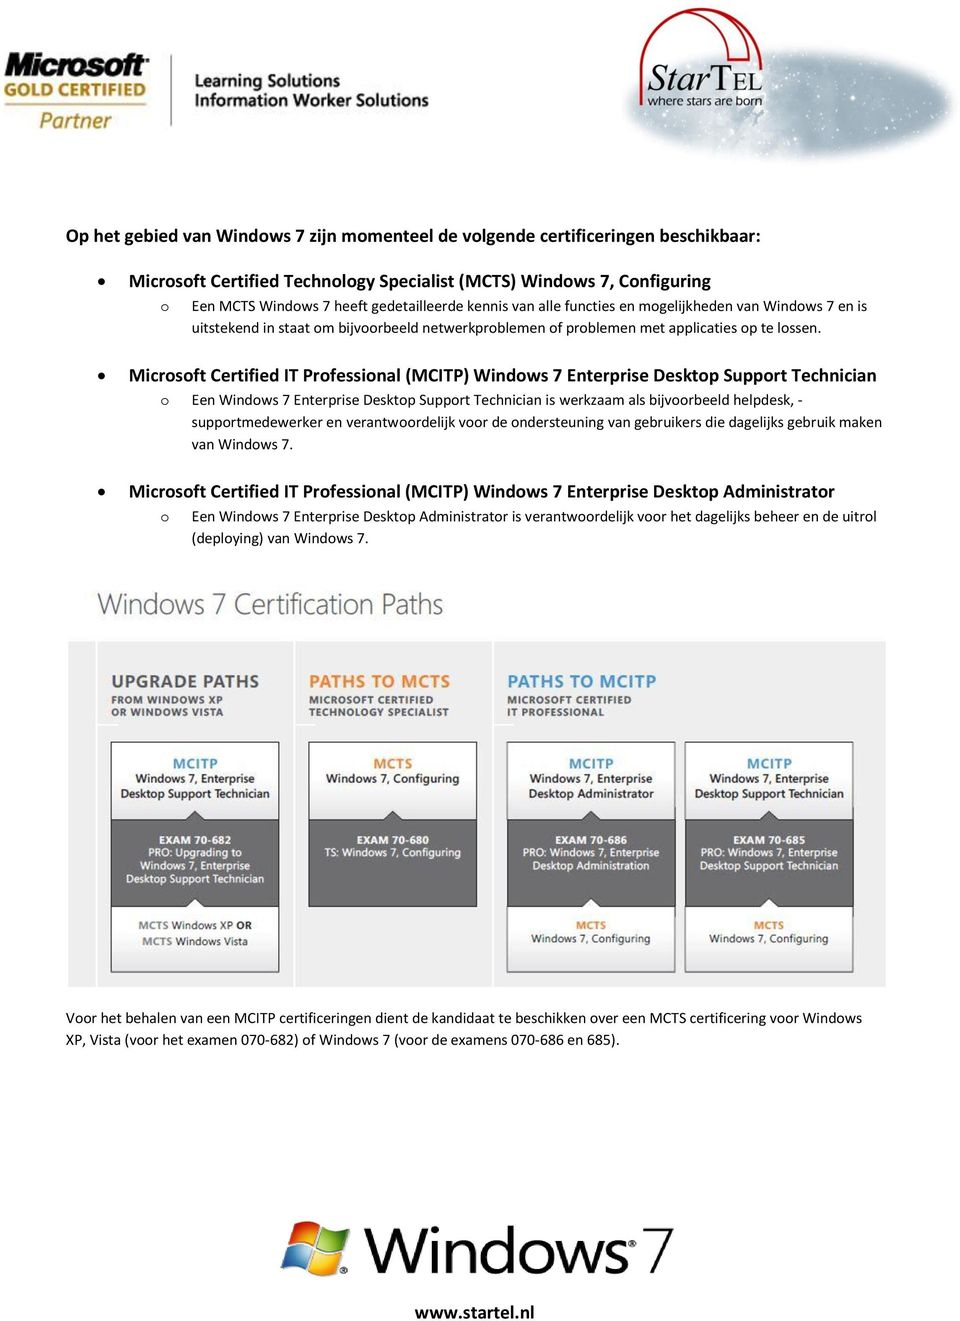 Microsoft Certified IT Professional (MCITP) Windows 7 Enterprise Desktop Support Technician o Een Windows 7 Enterprise Desktop Support Technician is werkzaam als bijvoorbeeld helpdesk, -